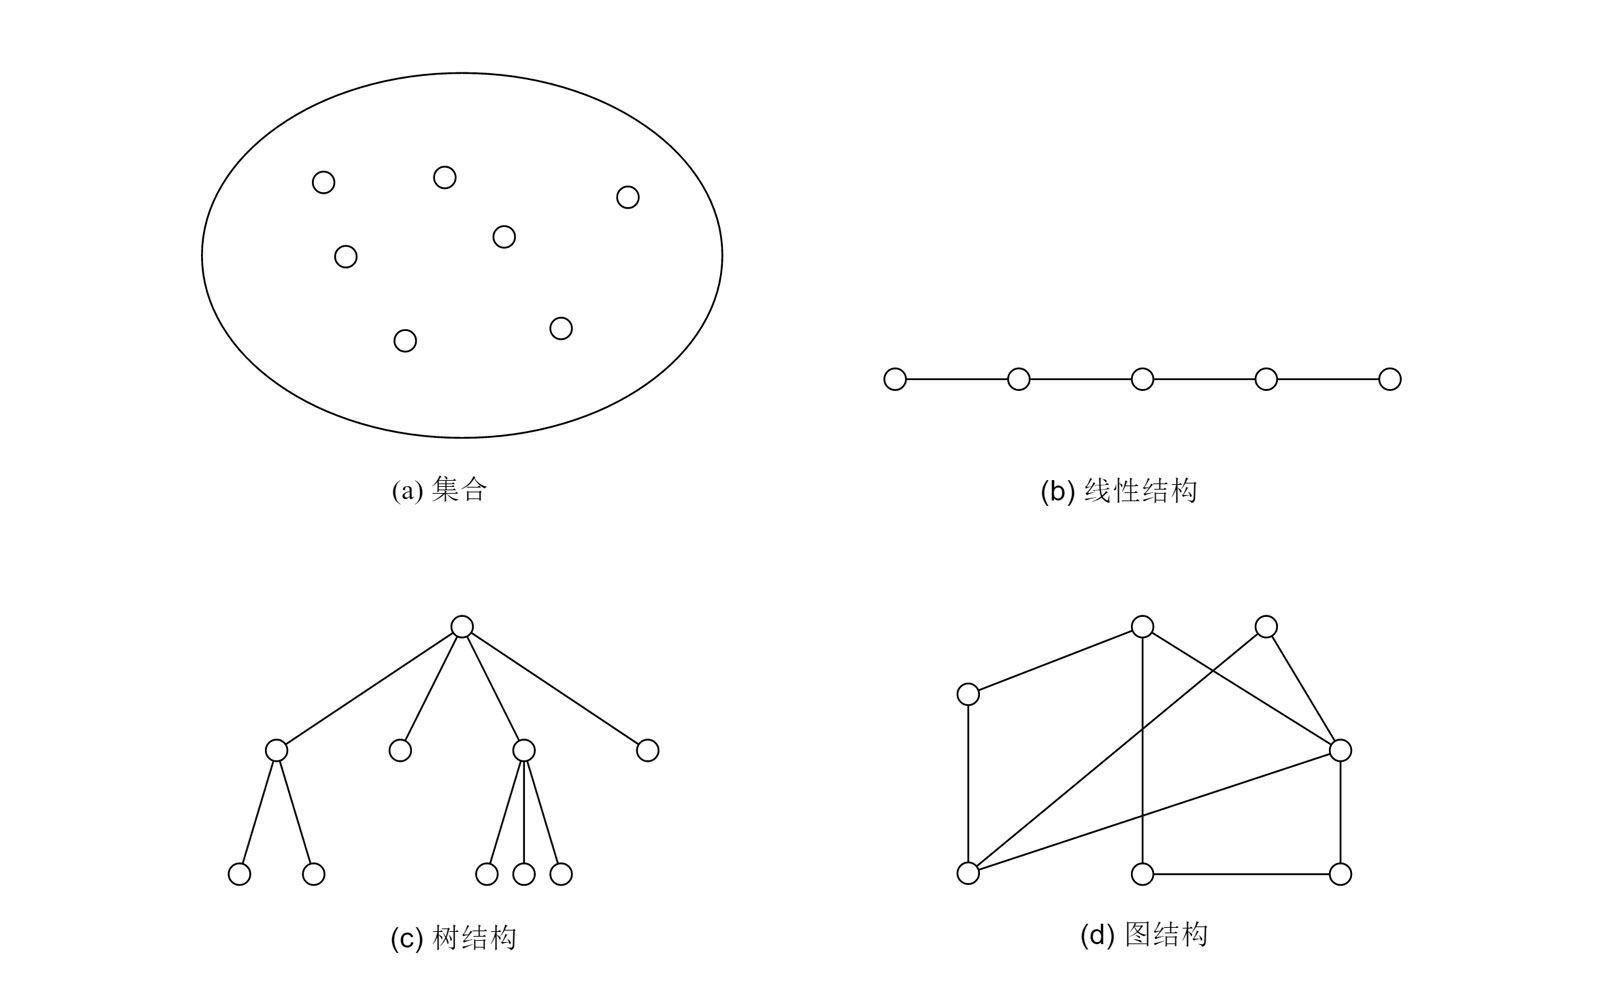 图 1-1 数据结构的逻辑关系图